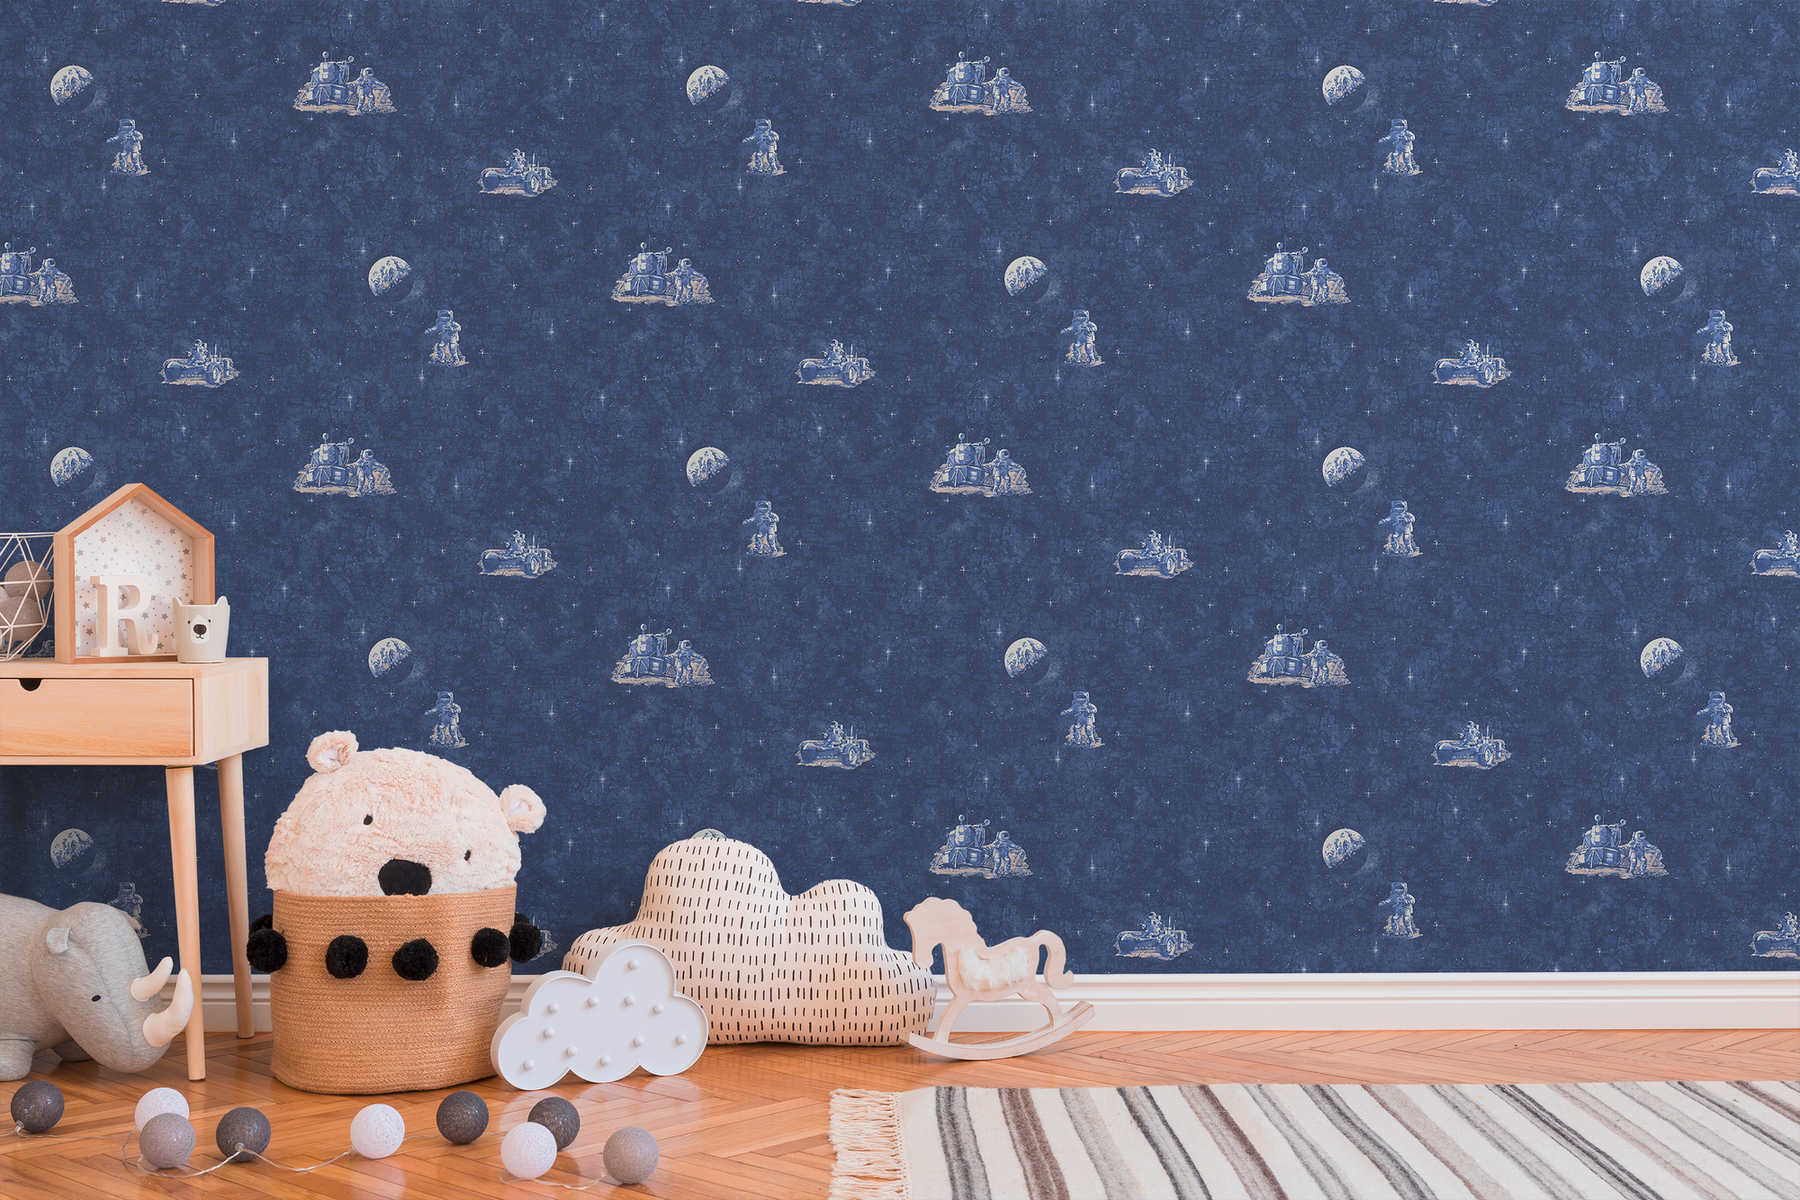             Kinderzimmer Tapete Astronaut, Weltall & Sterne – Blau, Weiß
        